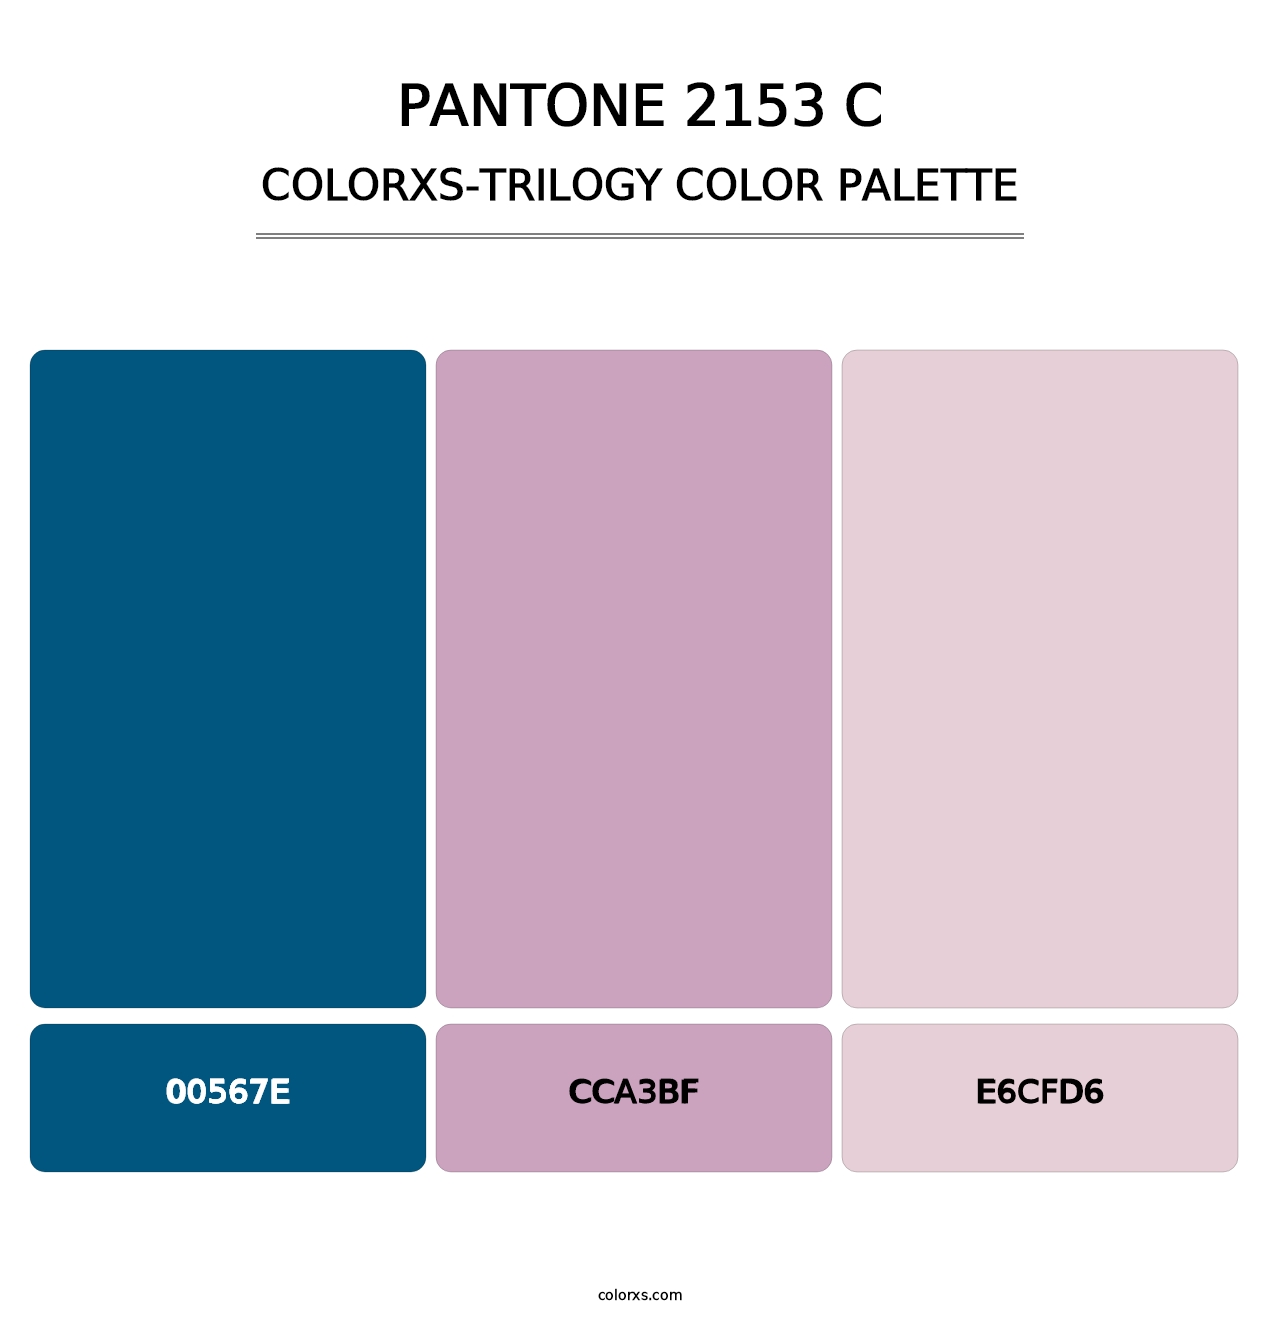 PANTONE 2153 C - Colorxs Trilogy Palette